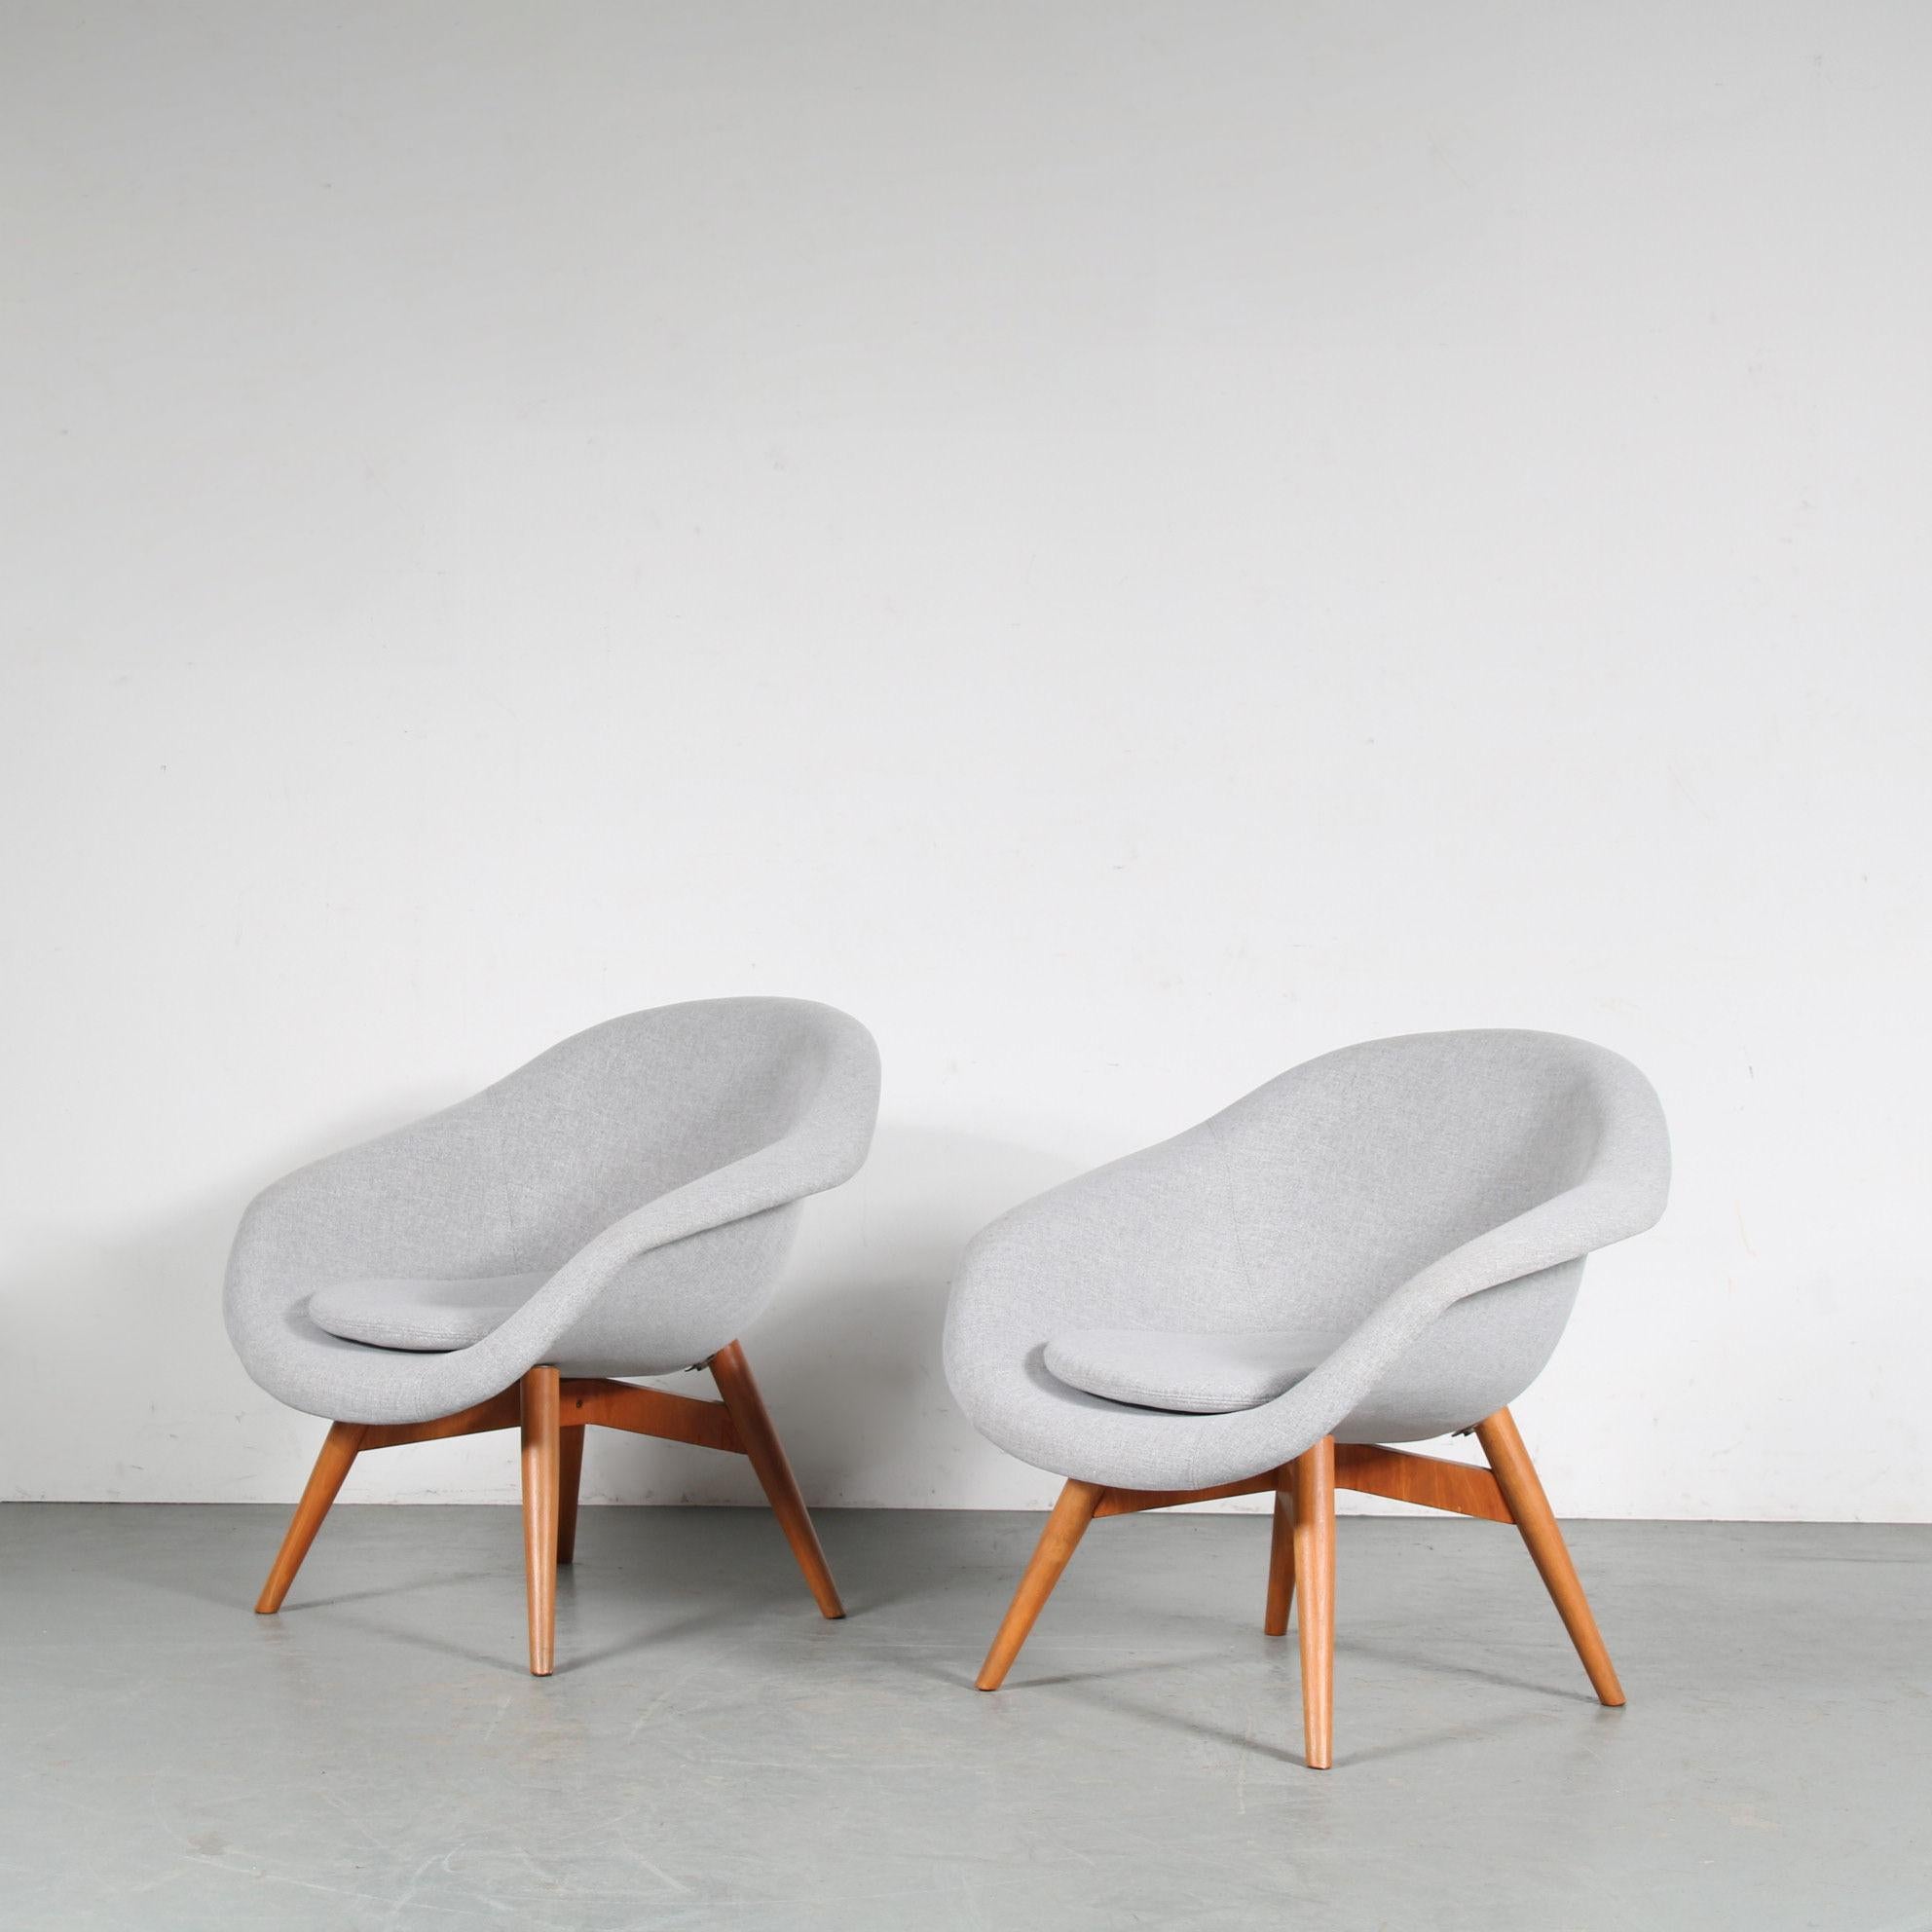 Une fantastique paire de chaises longues conçue par Frantisek Jirak, fabriquée en République tchèque vers 1950.

Ces chaises accrocheuses ont une base en bois de hêtre de haute qualité dans une belle couleur brune chaude. Les pieds effilés leur